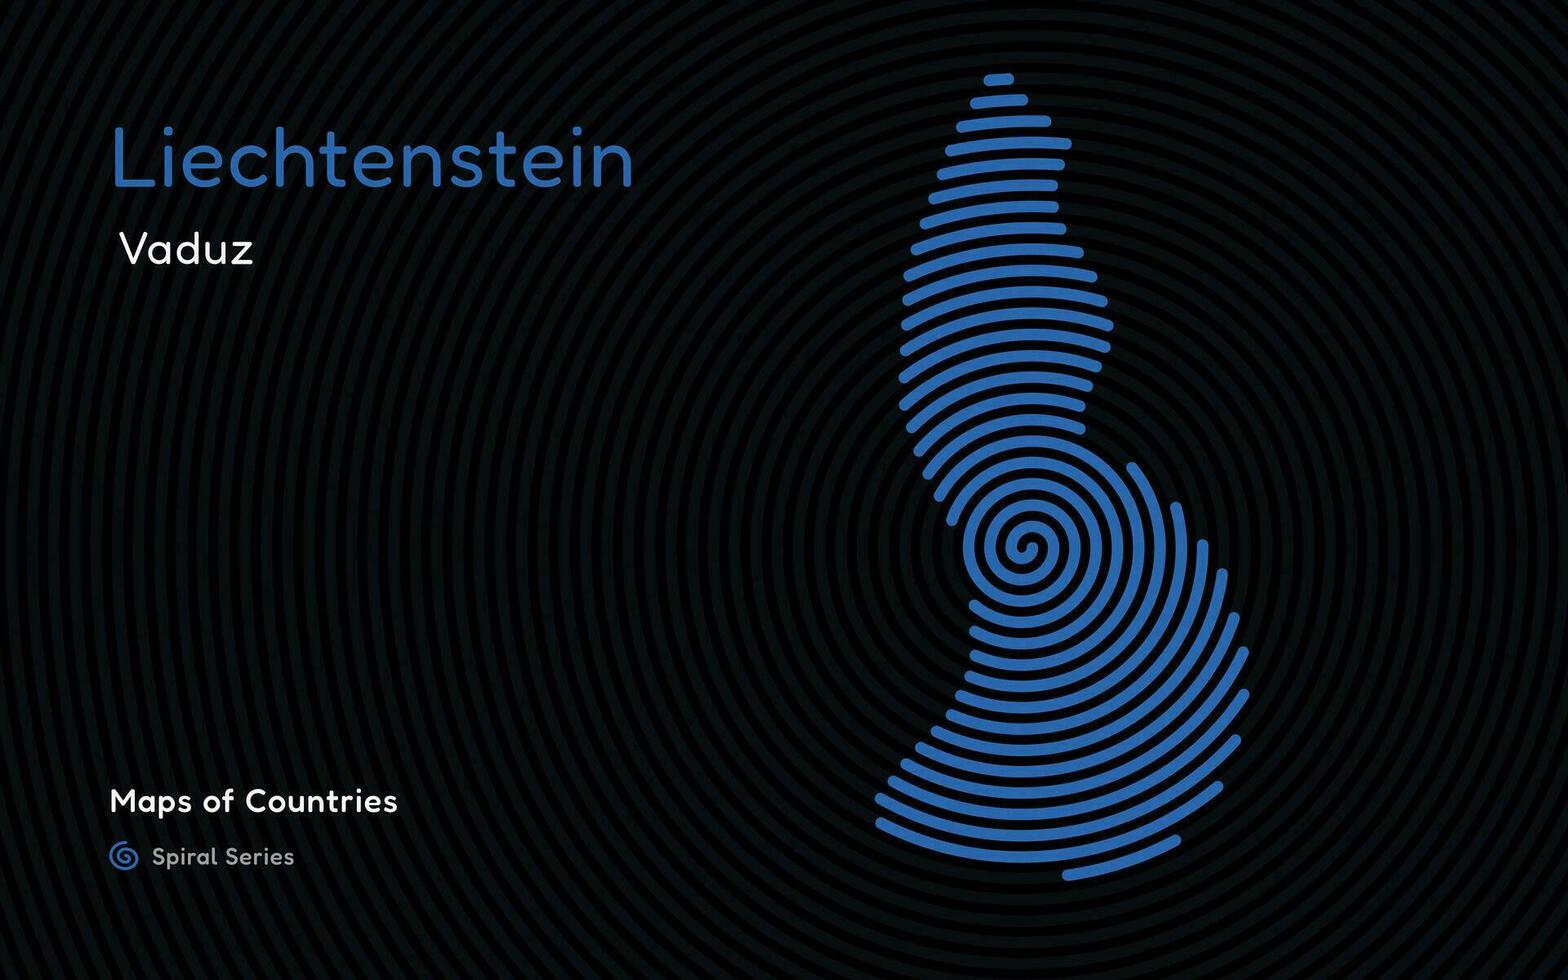 kreativ Fingerabdruck Karte von Liechtenstein. politisch Karte. vaduz. Hauptstadt. Welt Länder Vektor Karten Serie. Fingerabdruck Spiral- Serie